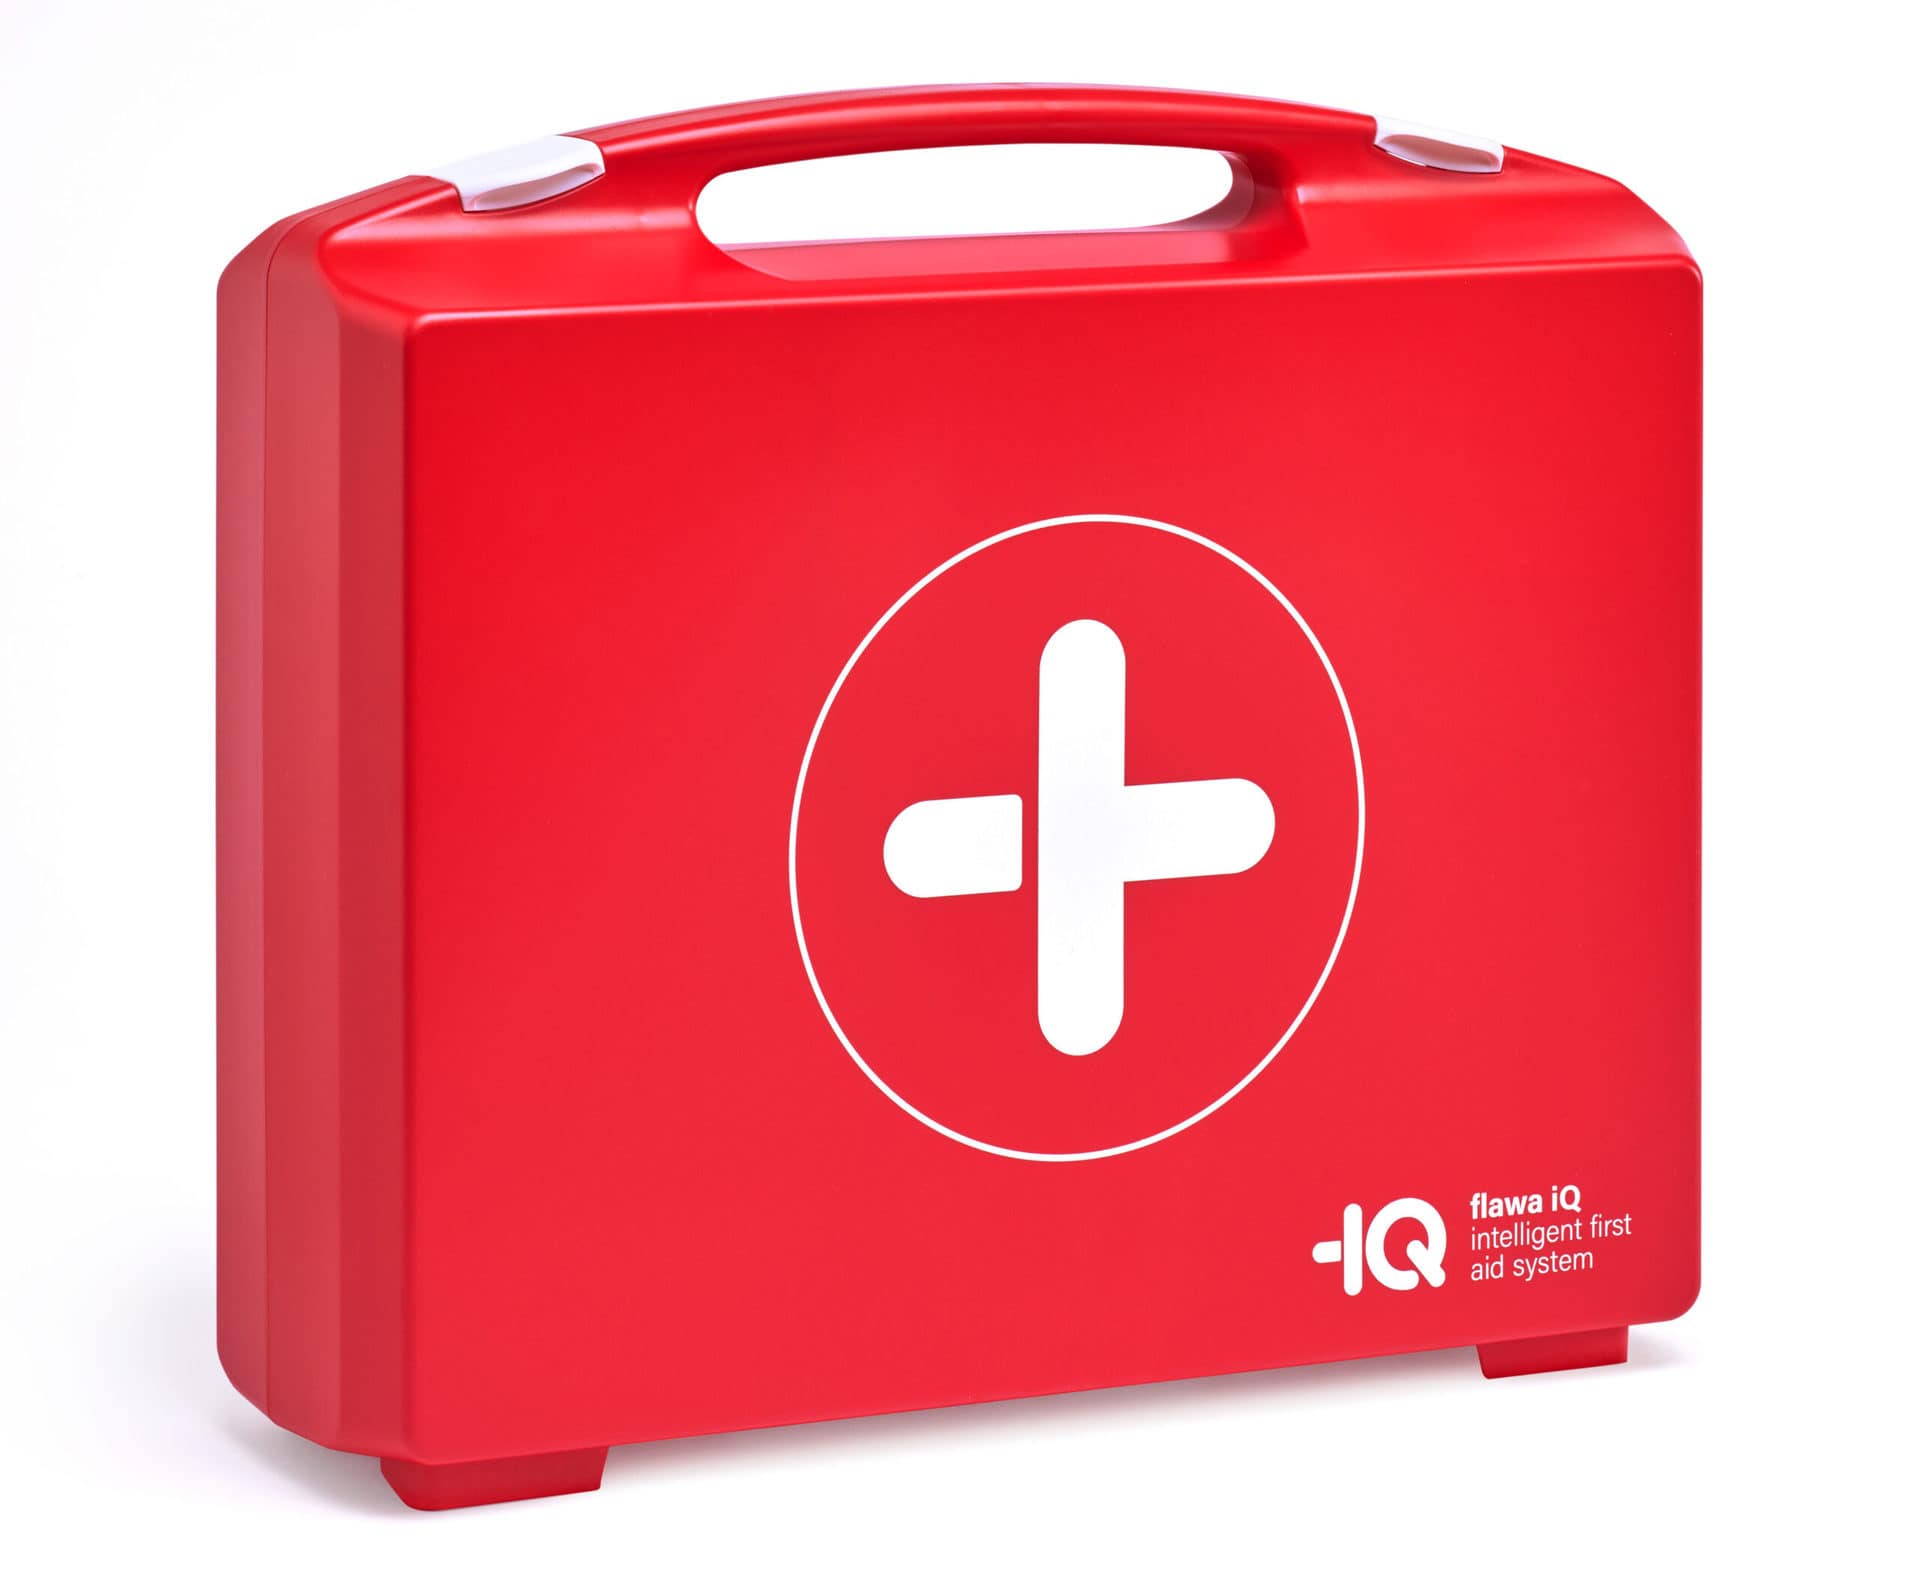 Intelligenter Erste-Hilfe-Koffer - flawa iQ setzt neue Massstäbe